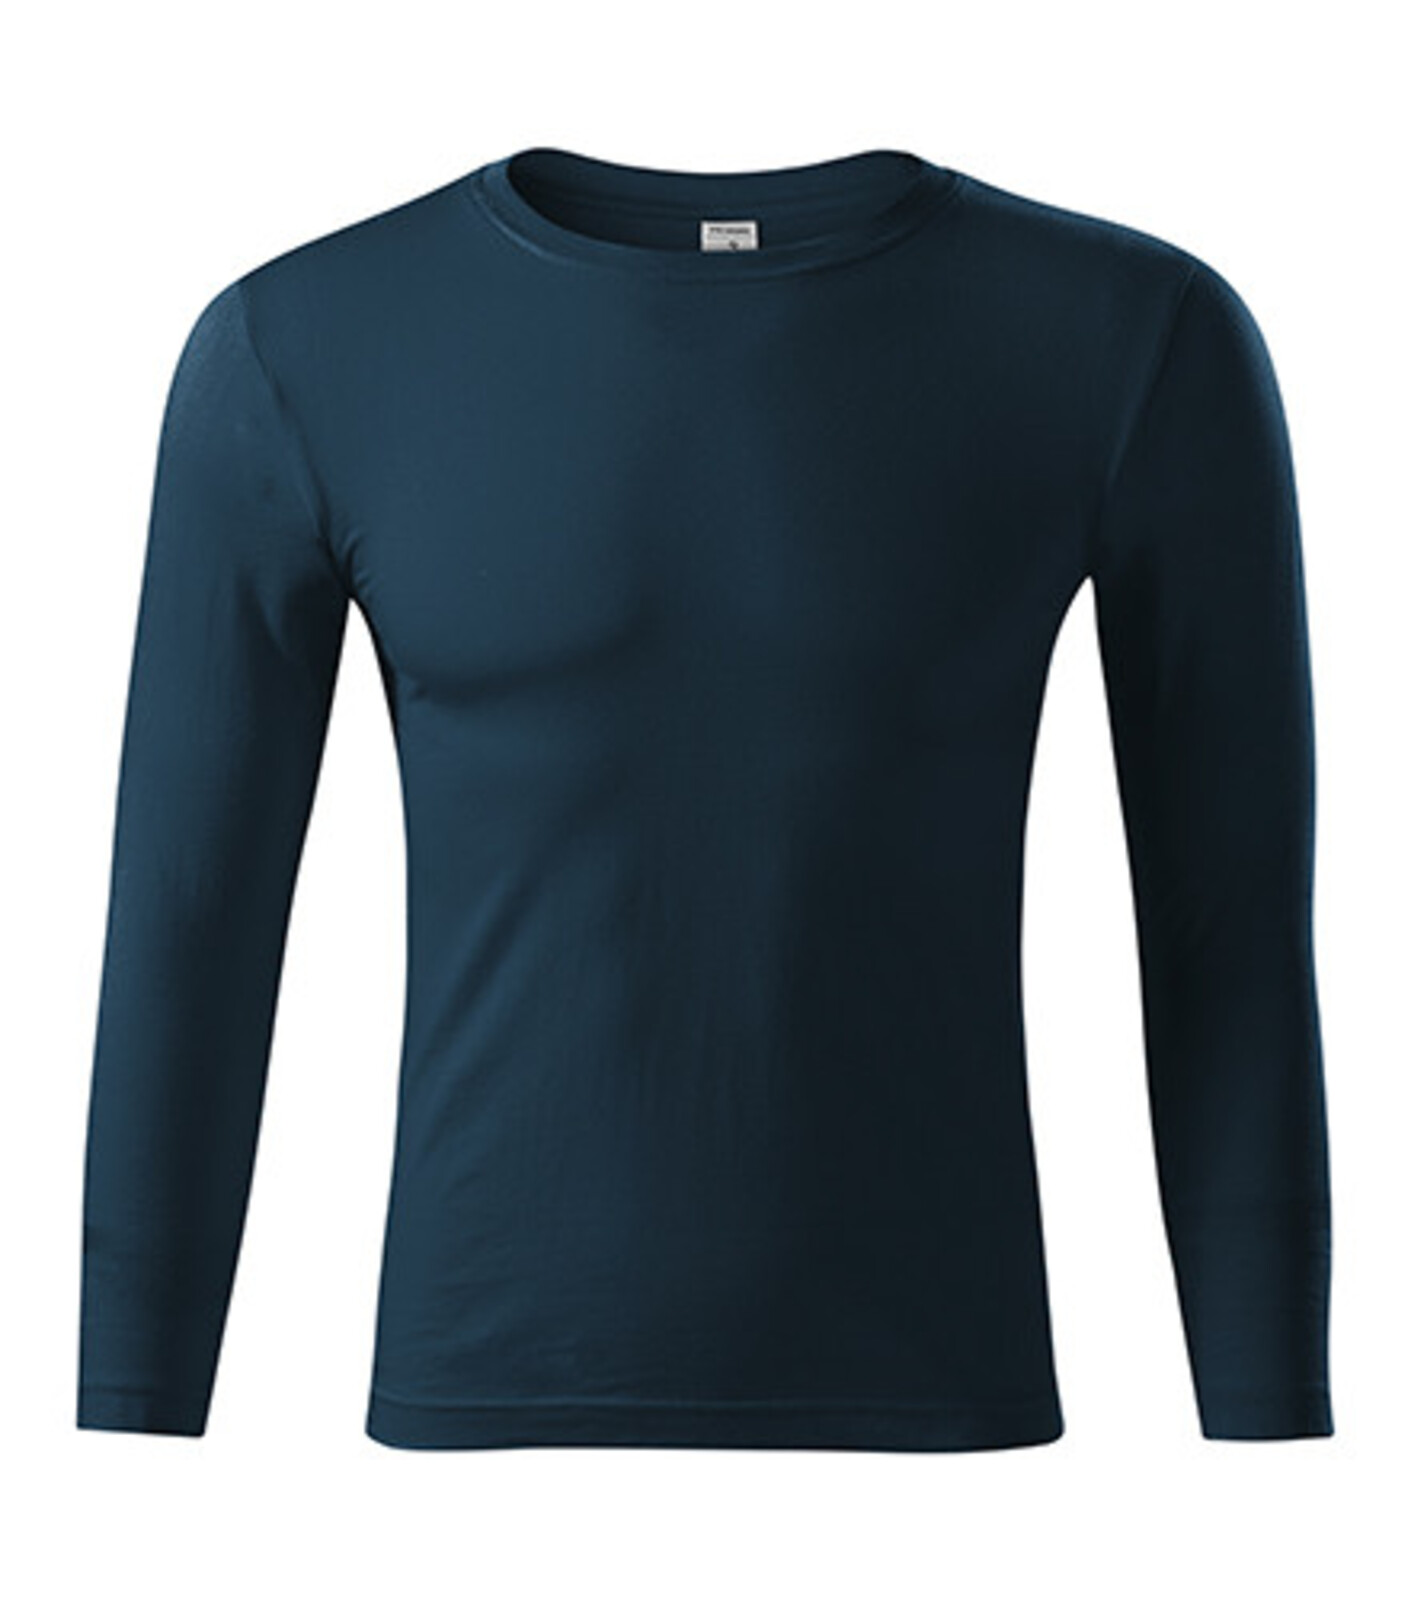 Unisex tričko s dlhým rukávom Progress LS P75 - veľkosť: S, farba: tmavo modrá